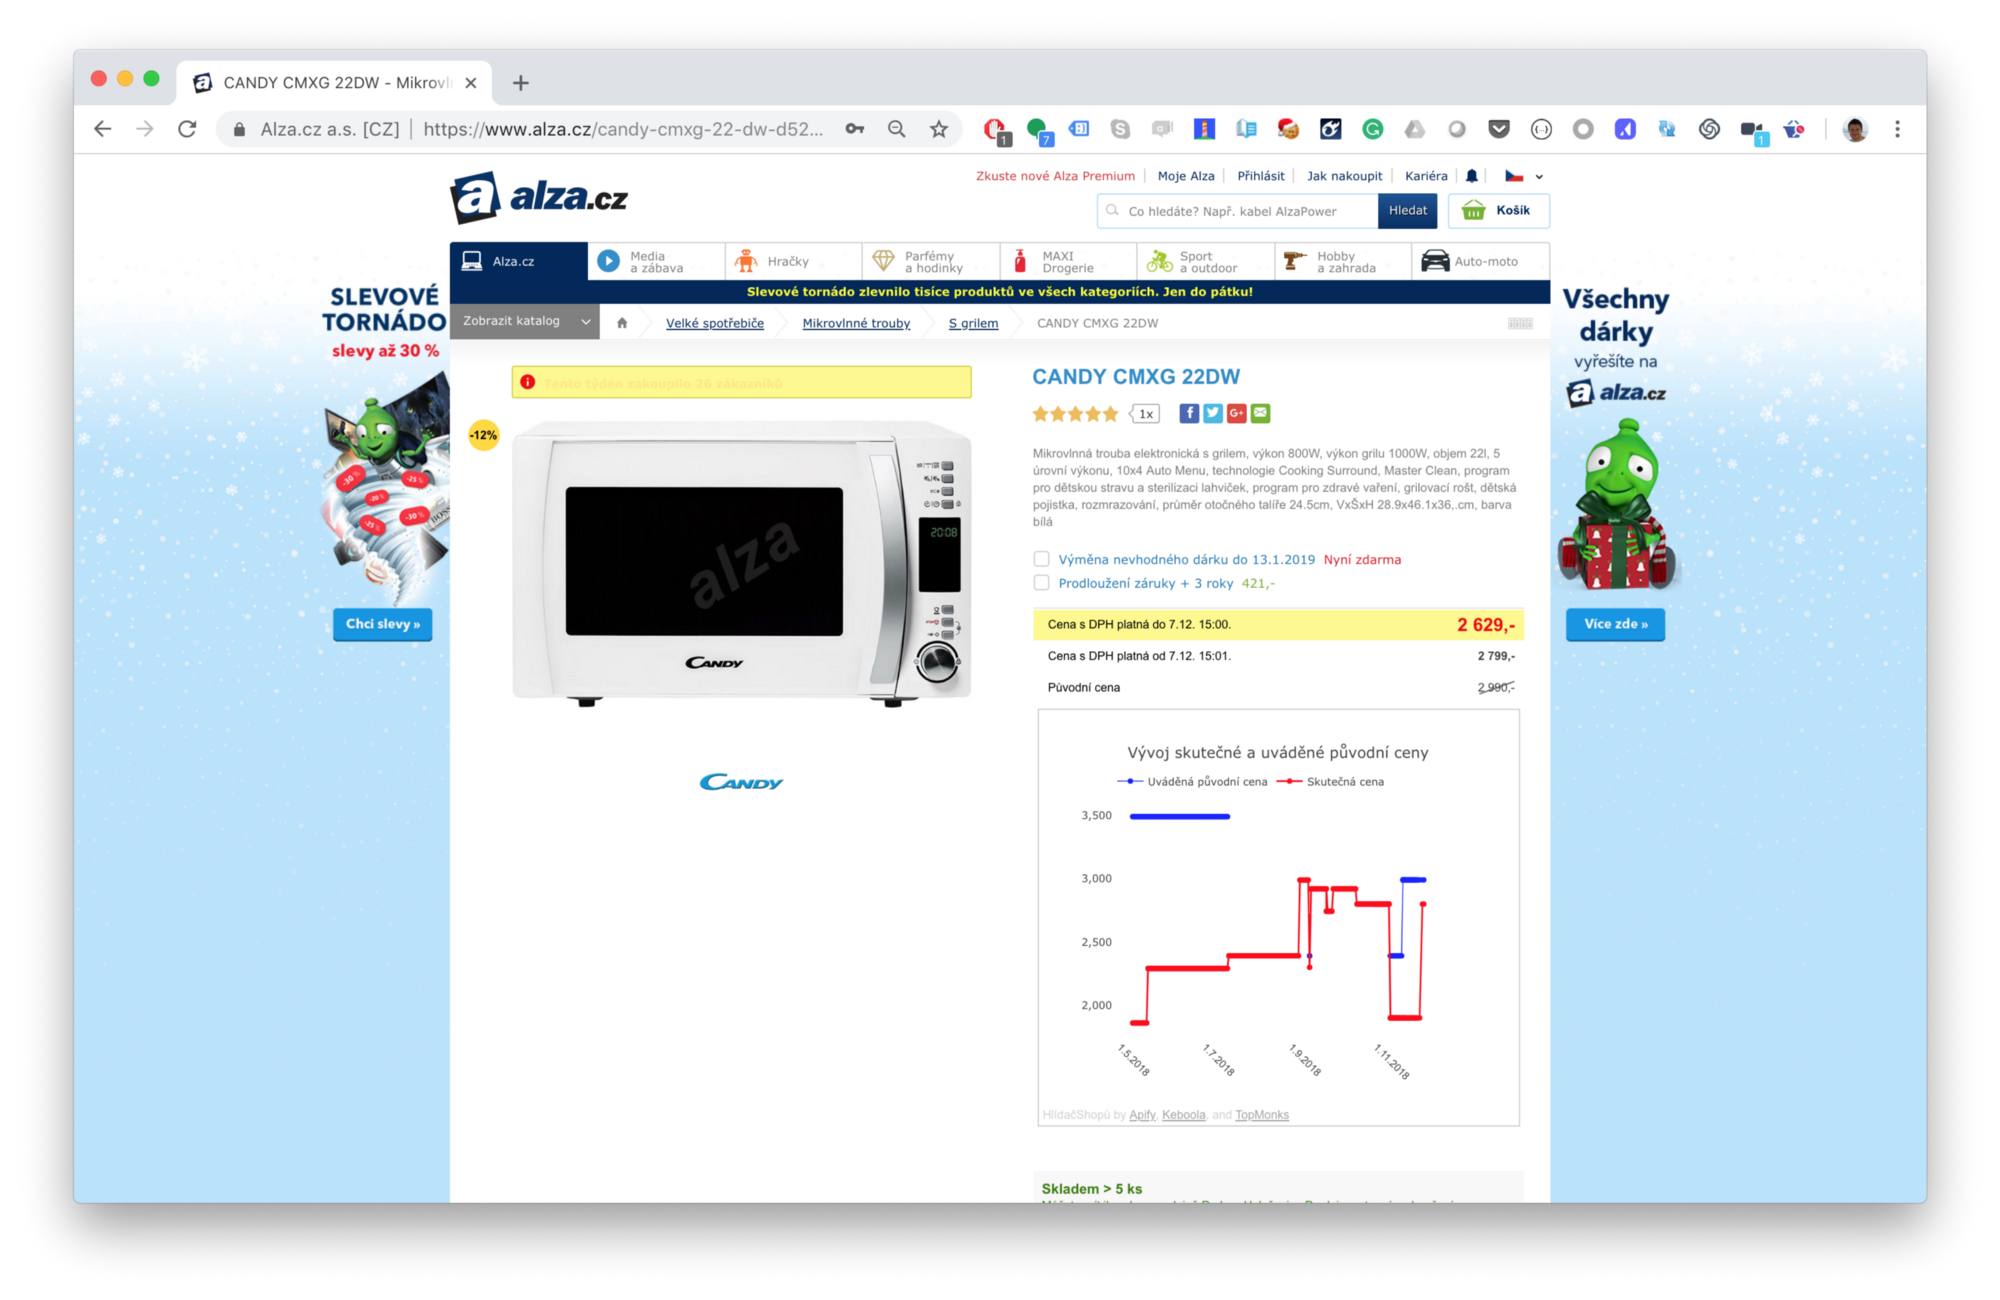 snímek obrazovky mikrovlnky ve výprodeji na webu alza.cz z 2990 Kč na 2629 Kč